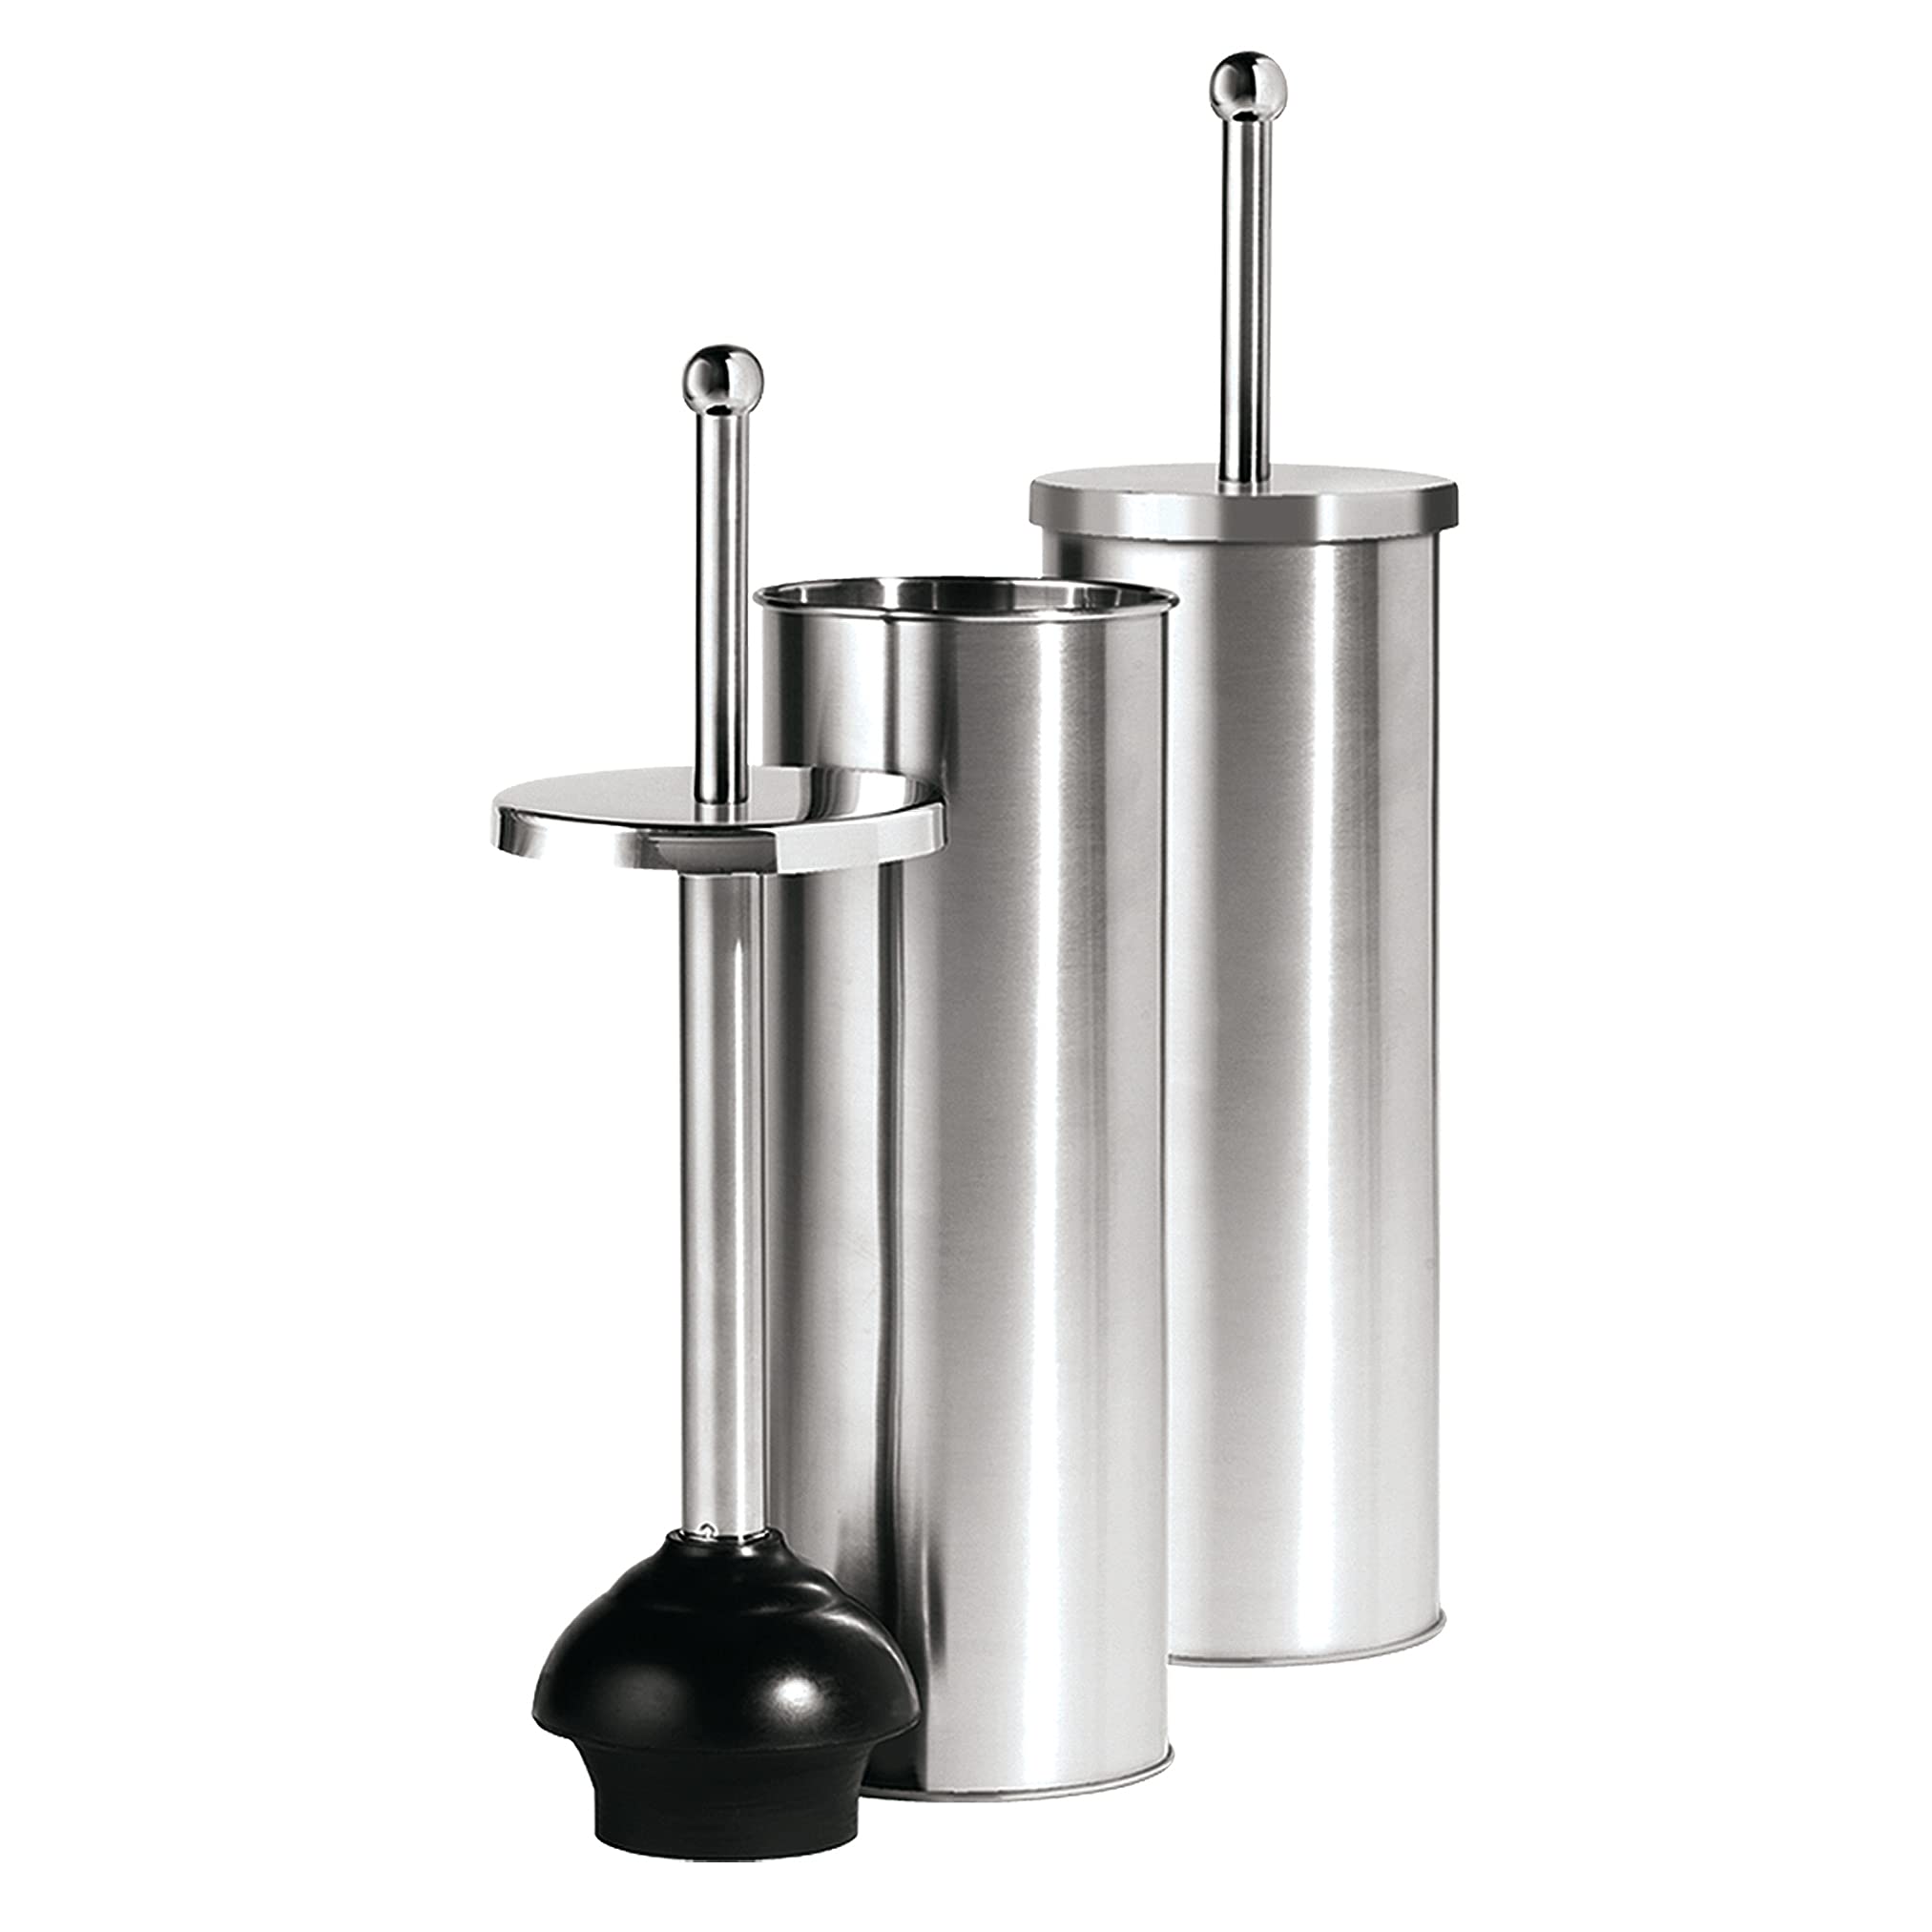 Oggi Toilet Bowl Plunger & Holder - Stainless Steel